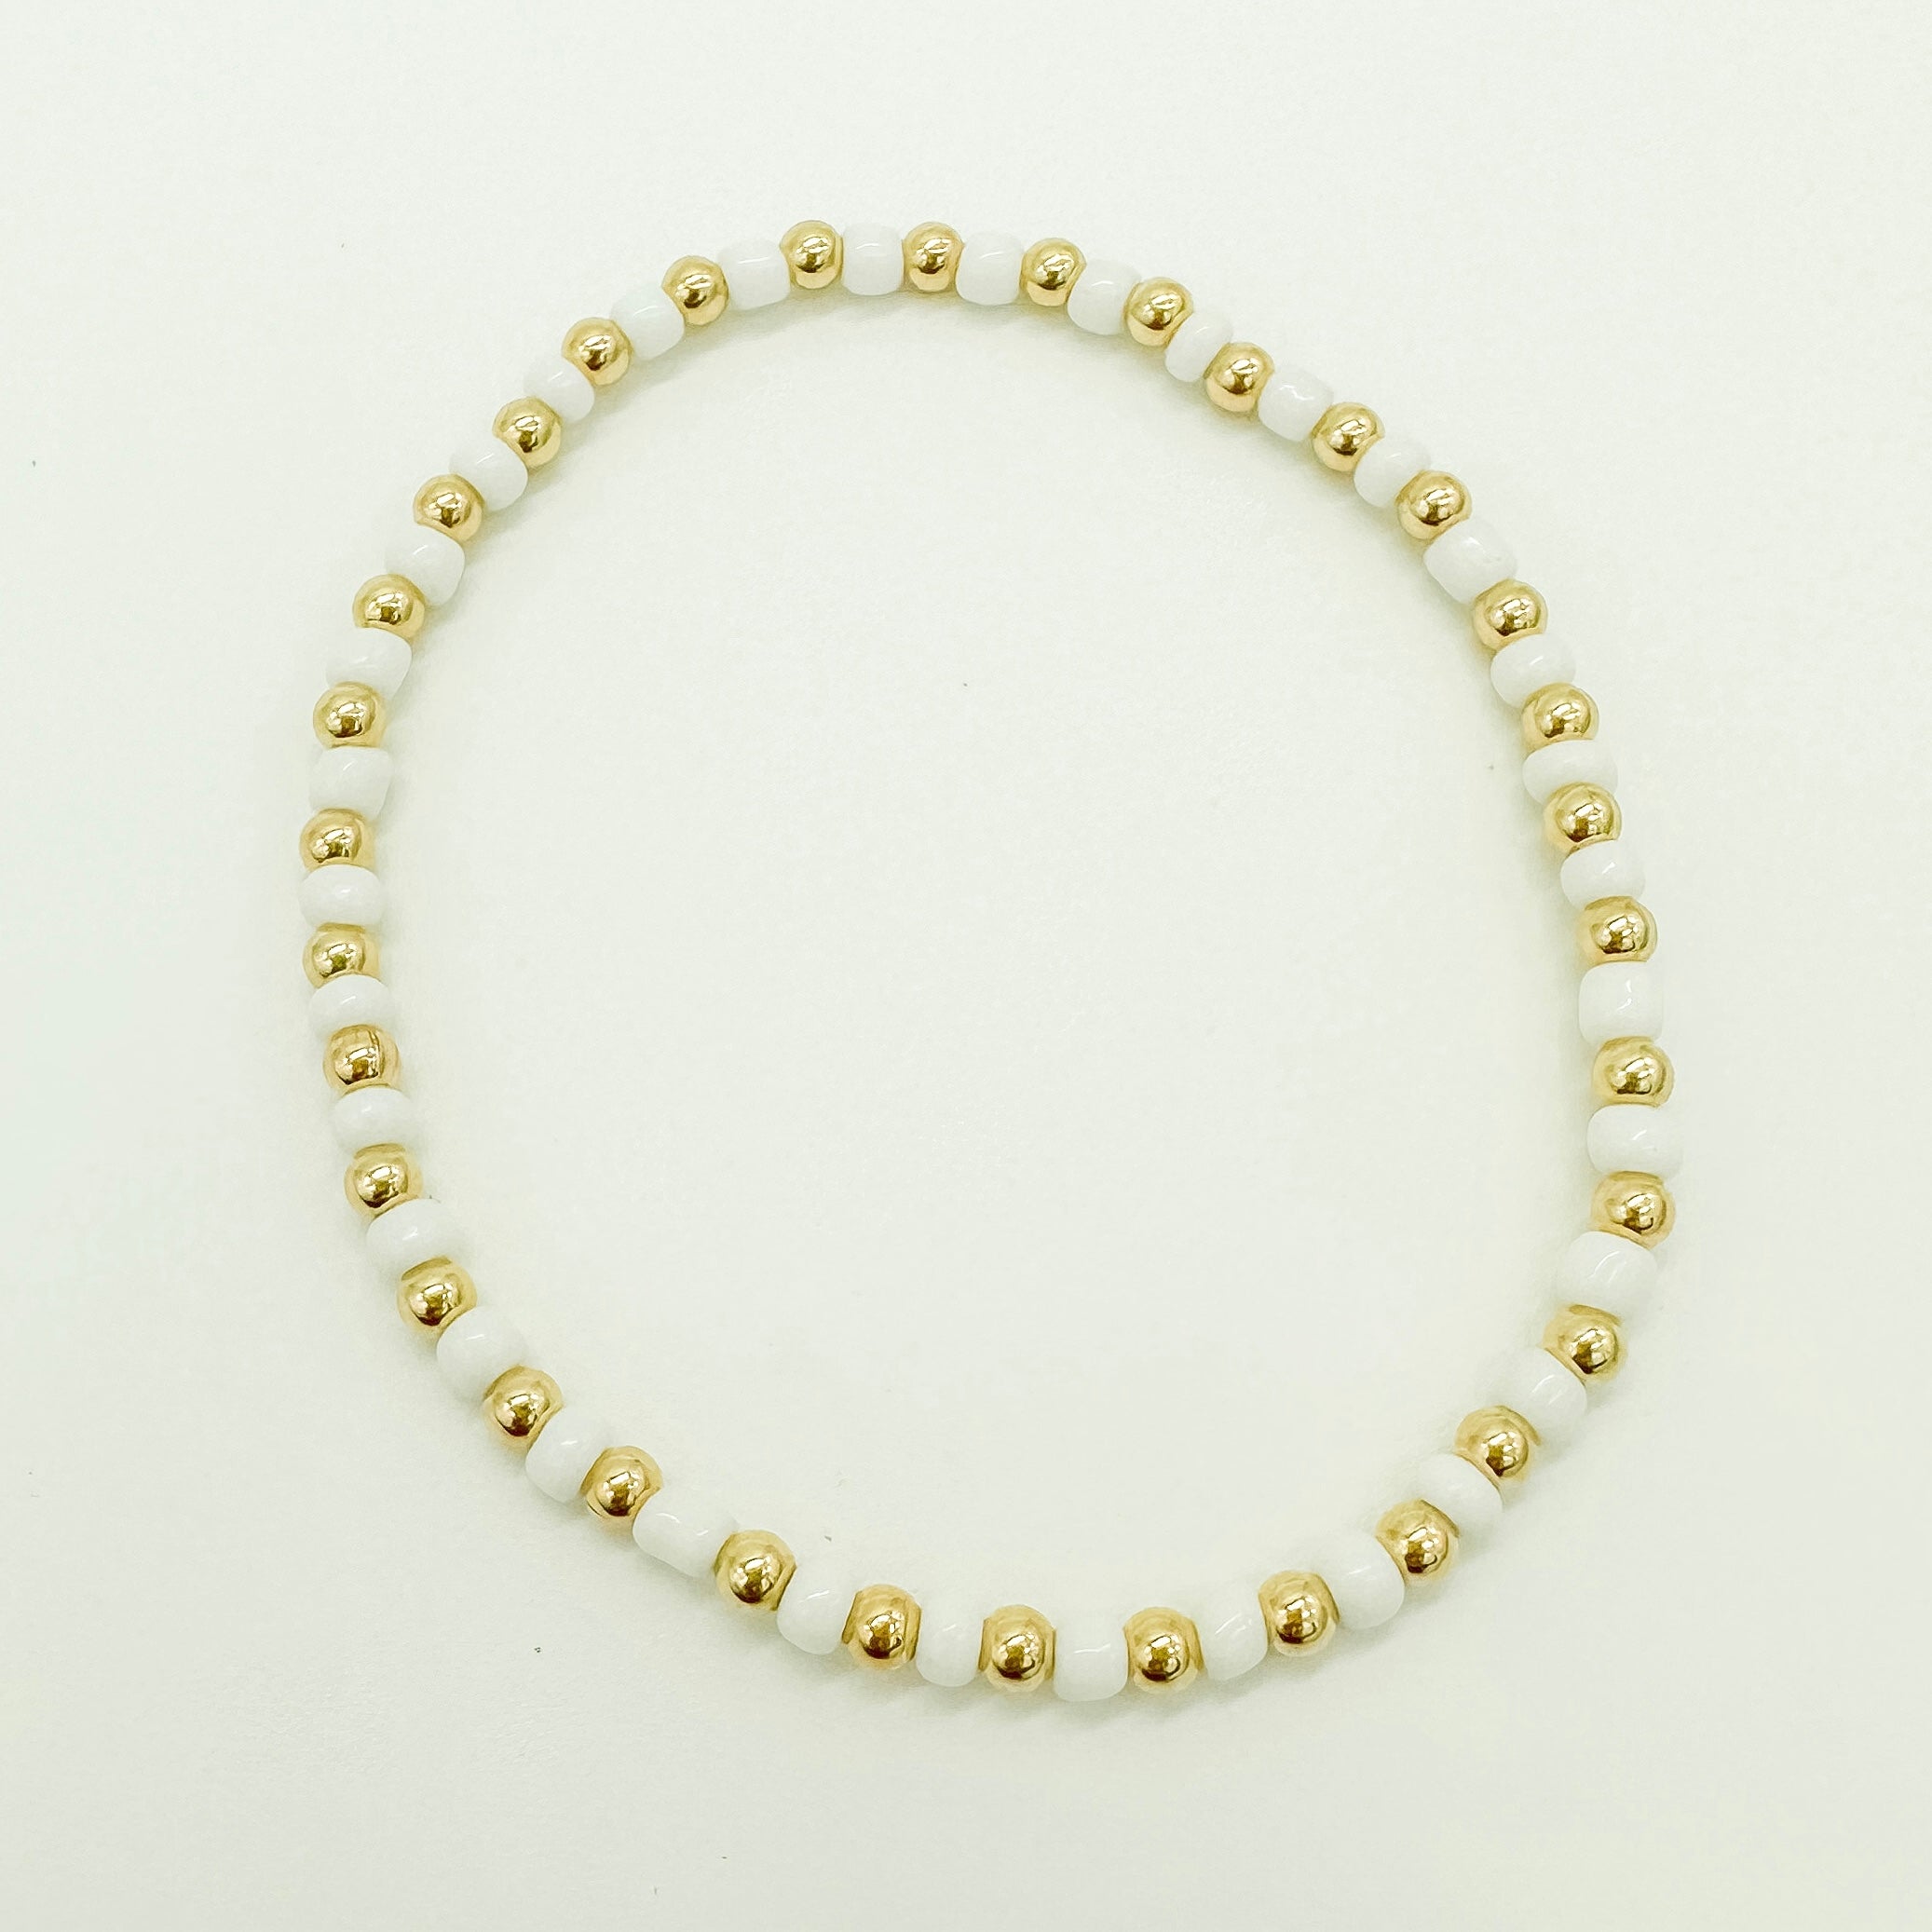 gold filled beaded bracelet / gold filled bracelet / beaded bracelet / handmade bracelet / wholesale gold filled bracelet